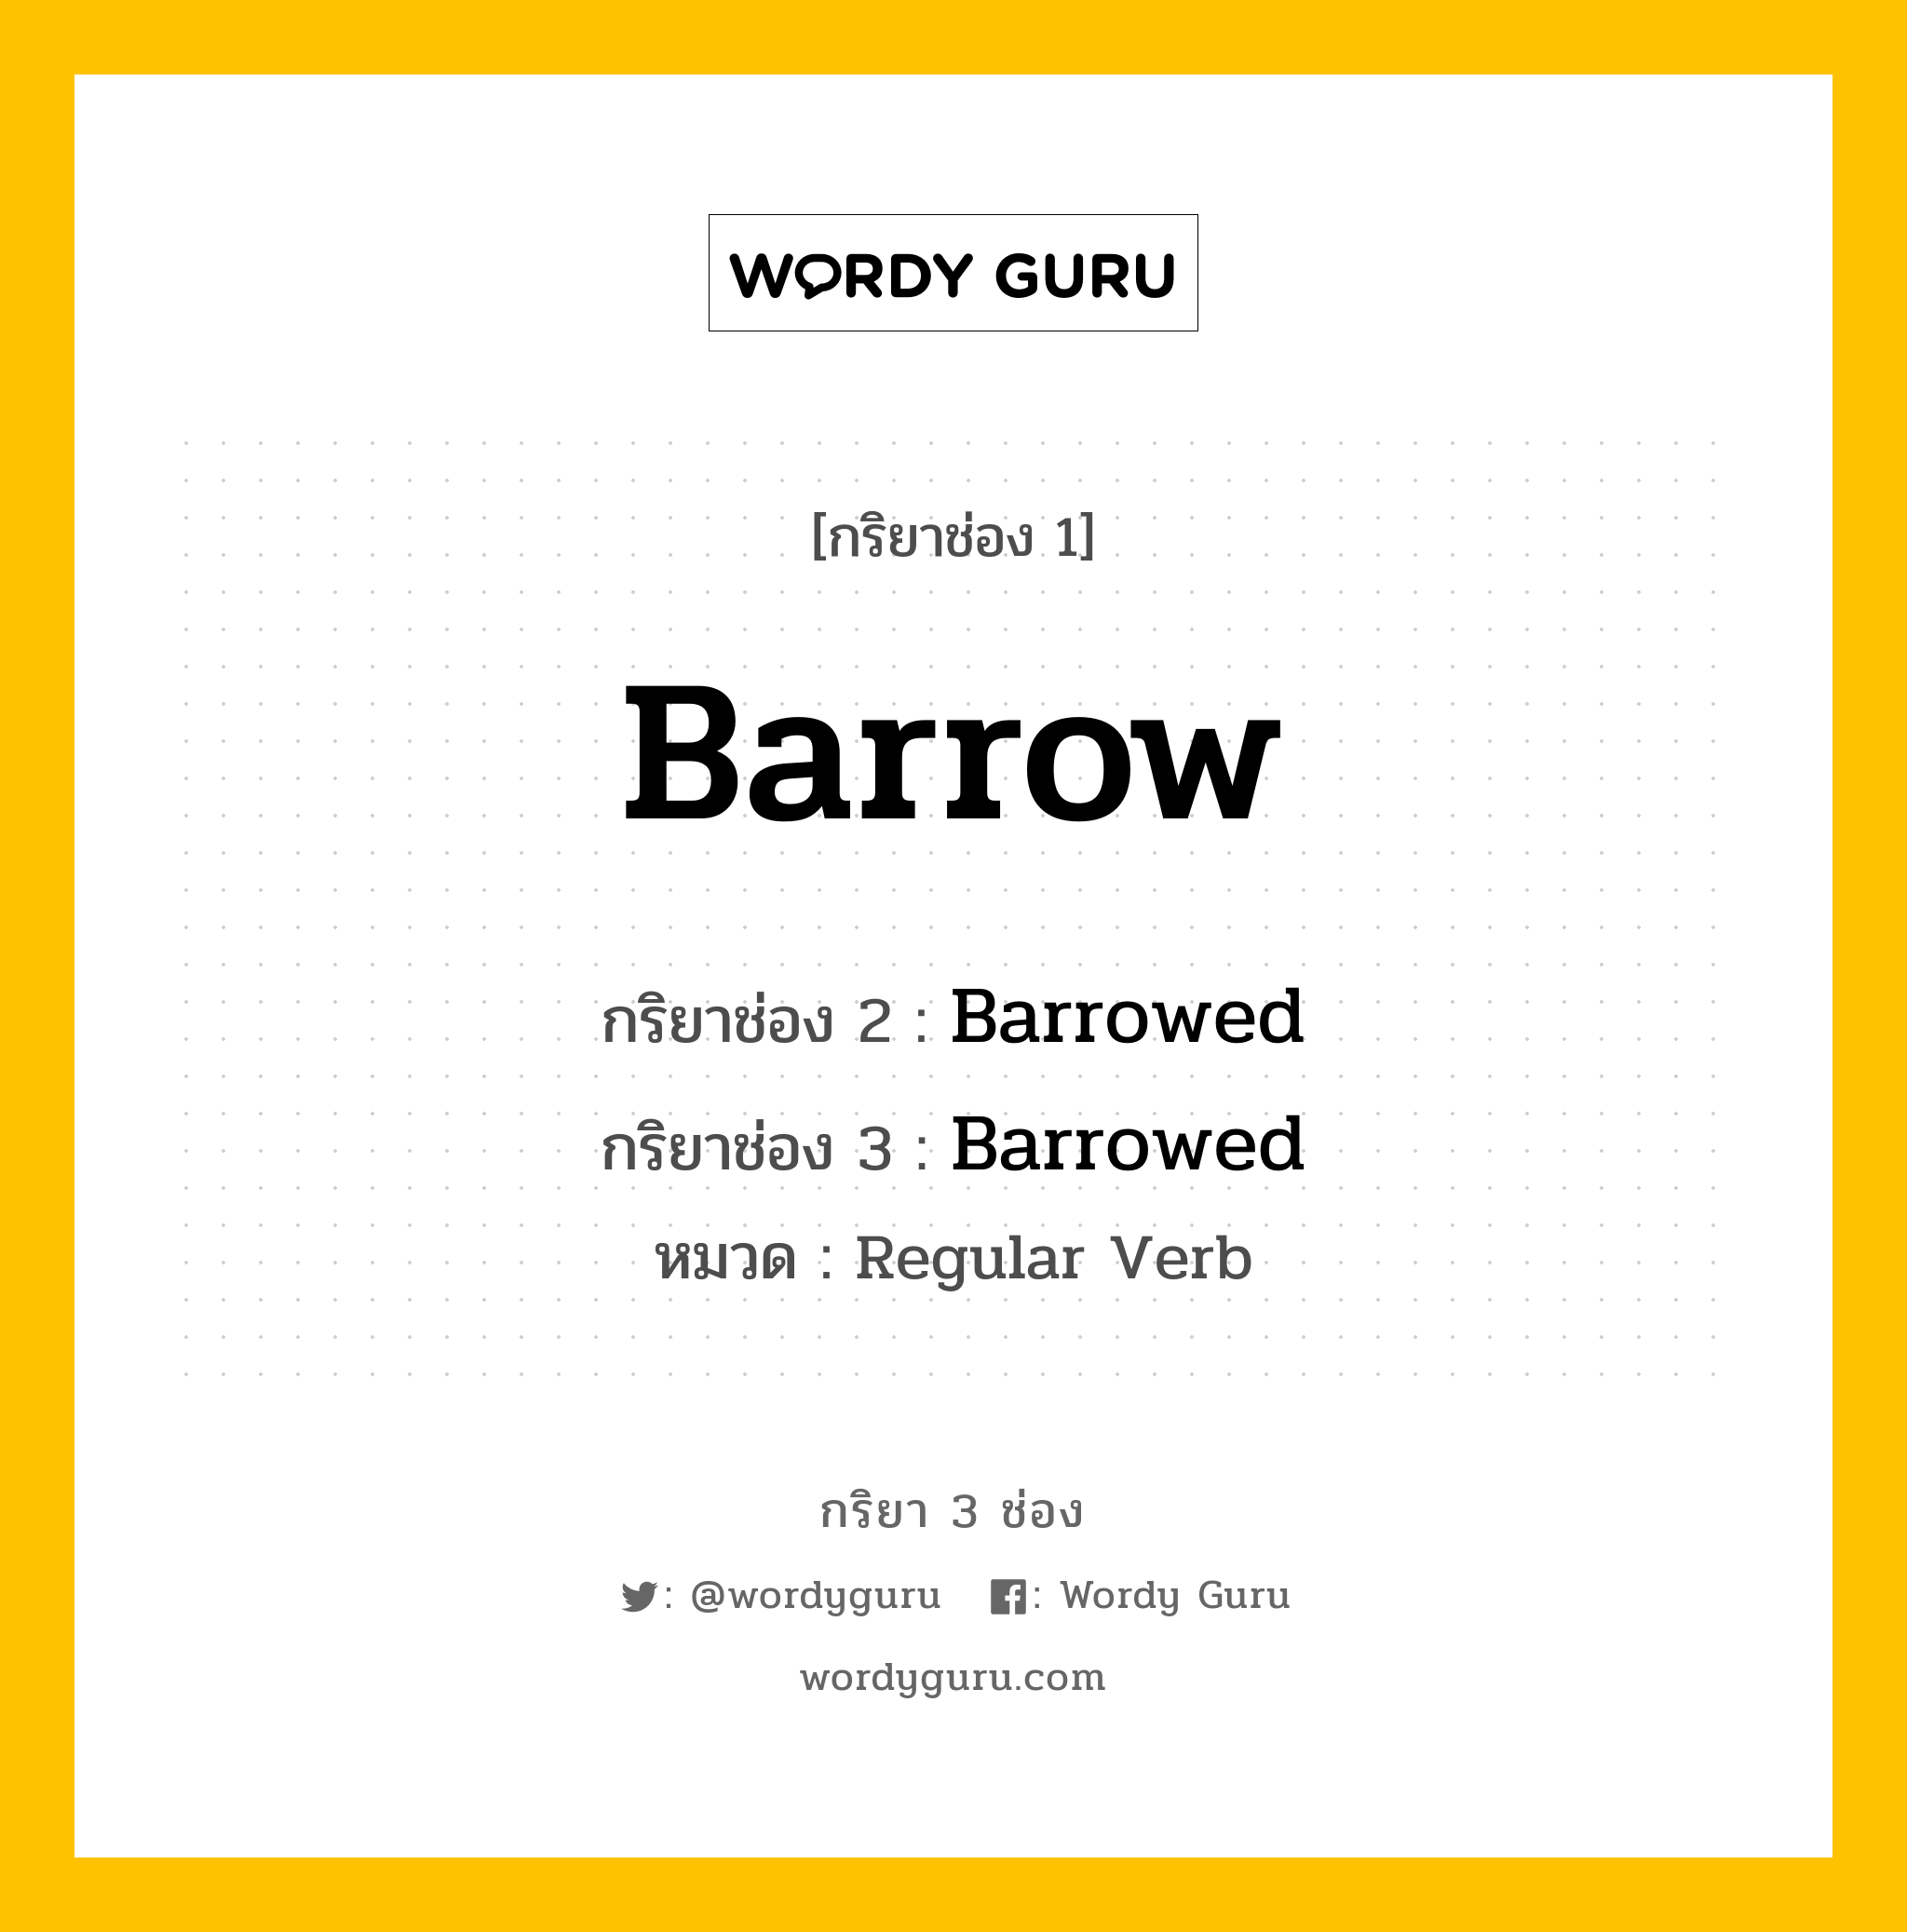 กริยา 3 ช่อง: Barrow ช่อง 2 Barrow ช่อง 3 คืออะไร, กริยาช่อง 1 Barrow กริยาช่อง 2 Barrowed กริยาช่อง 3 Barrowed หมวด Regular Verb หมวด Regular Verb